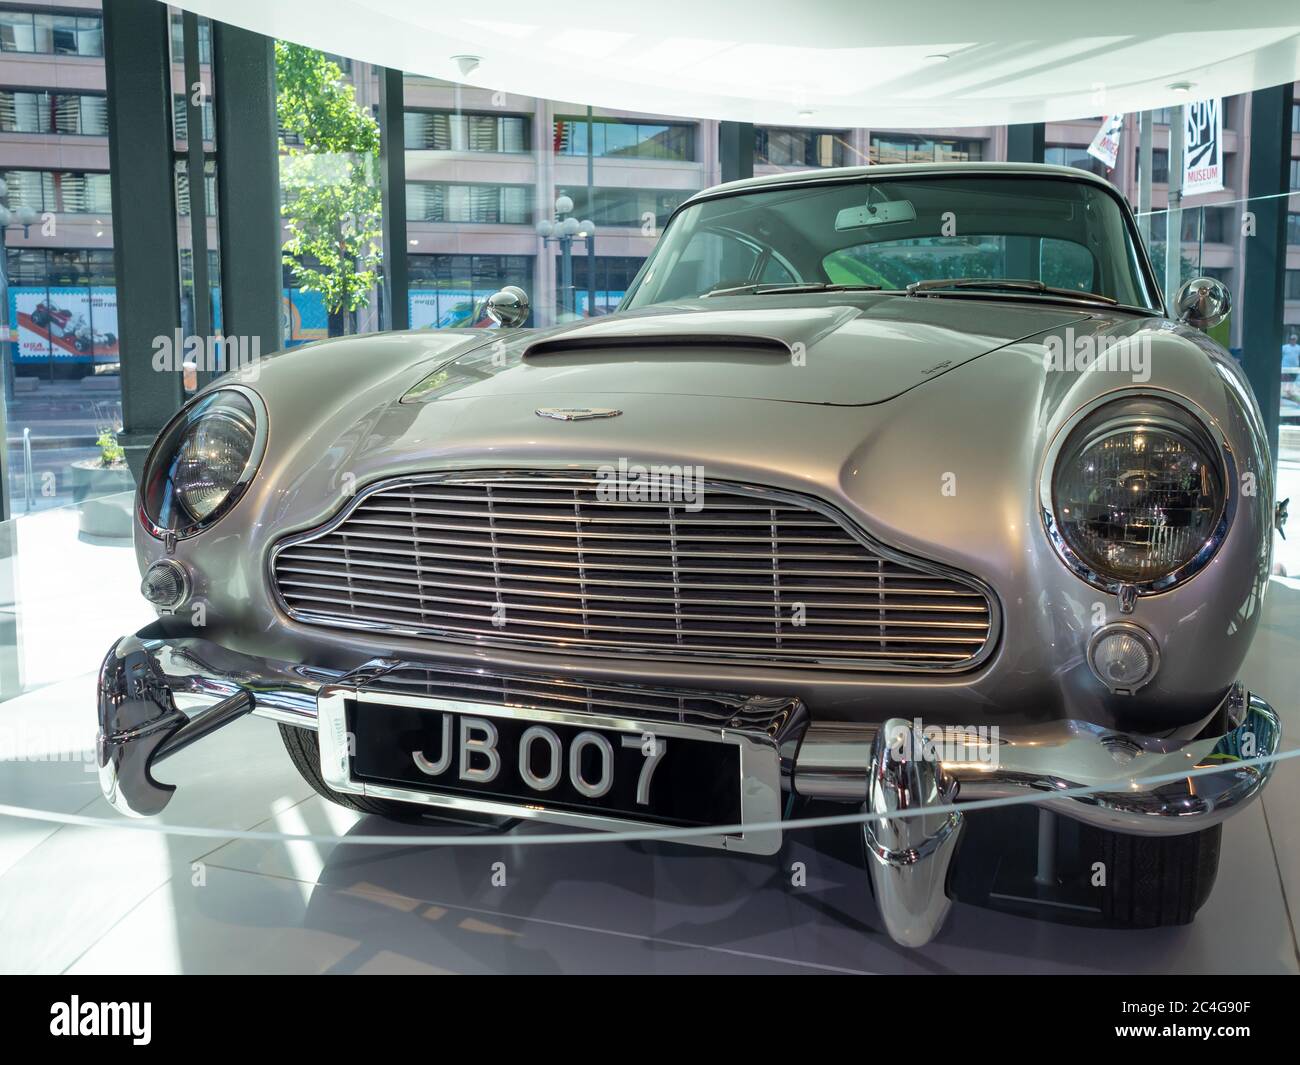 Réplique de la voiture James Bond dans le musée de l'espion à Washington DC USA Banque D'Images